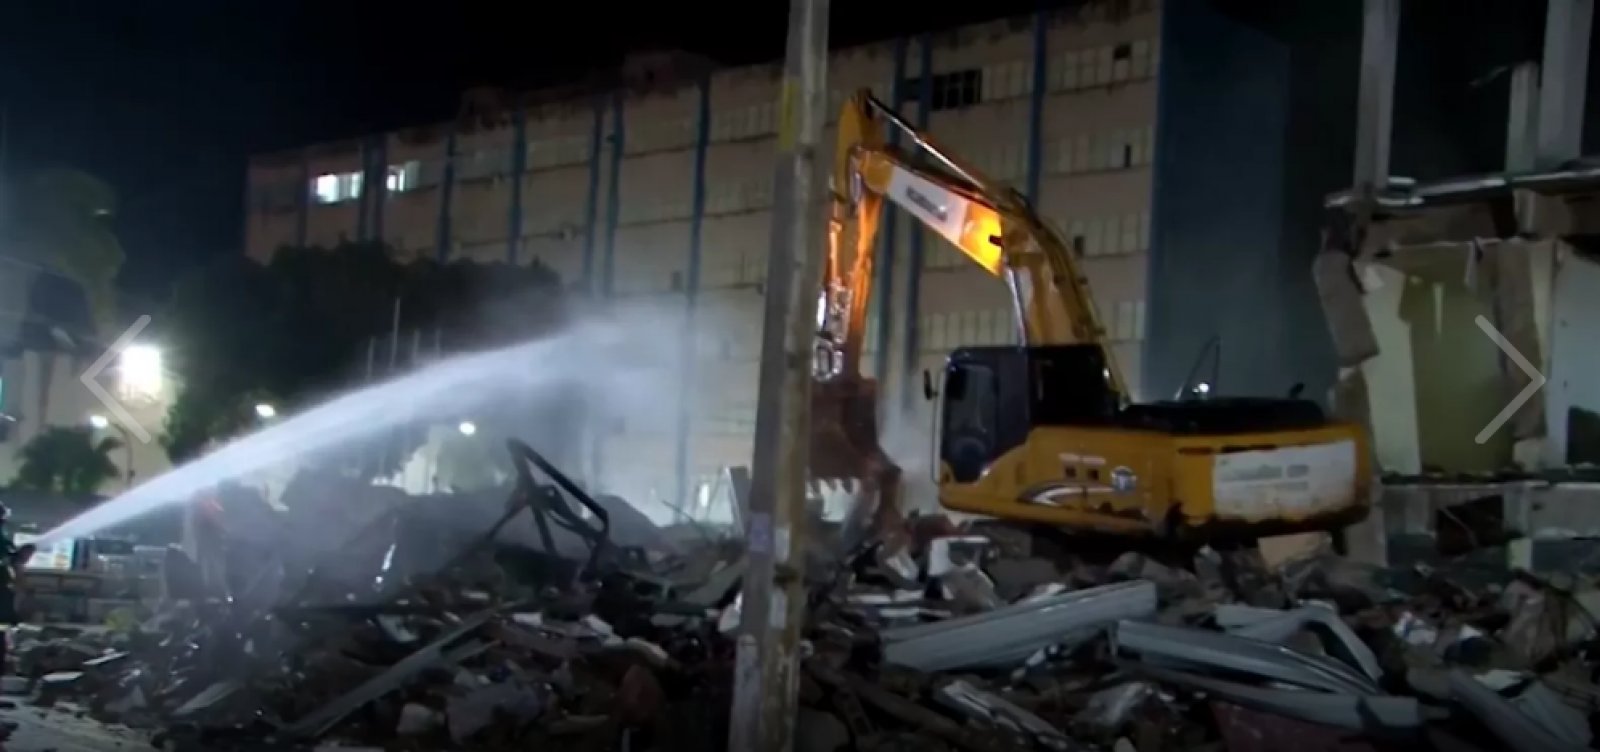 Um ano após desabamento, estrutura de shopping popular em Itabuna começa a ser demolida